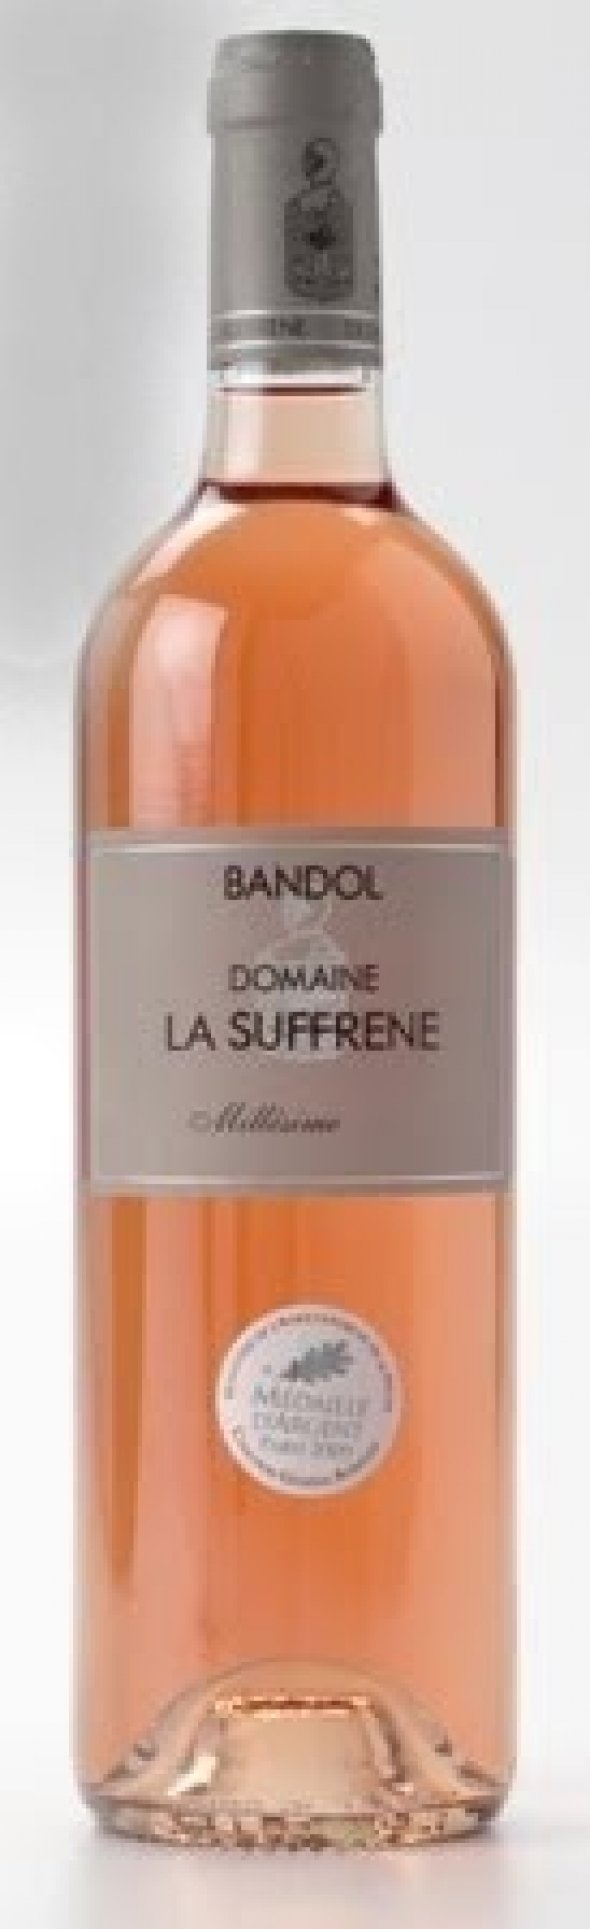 Domaine La Suffrene Bandol Rose 2013